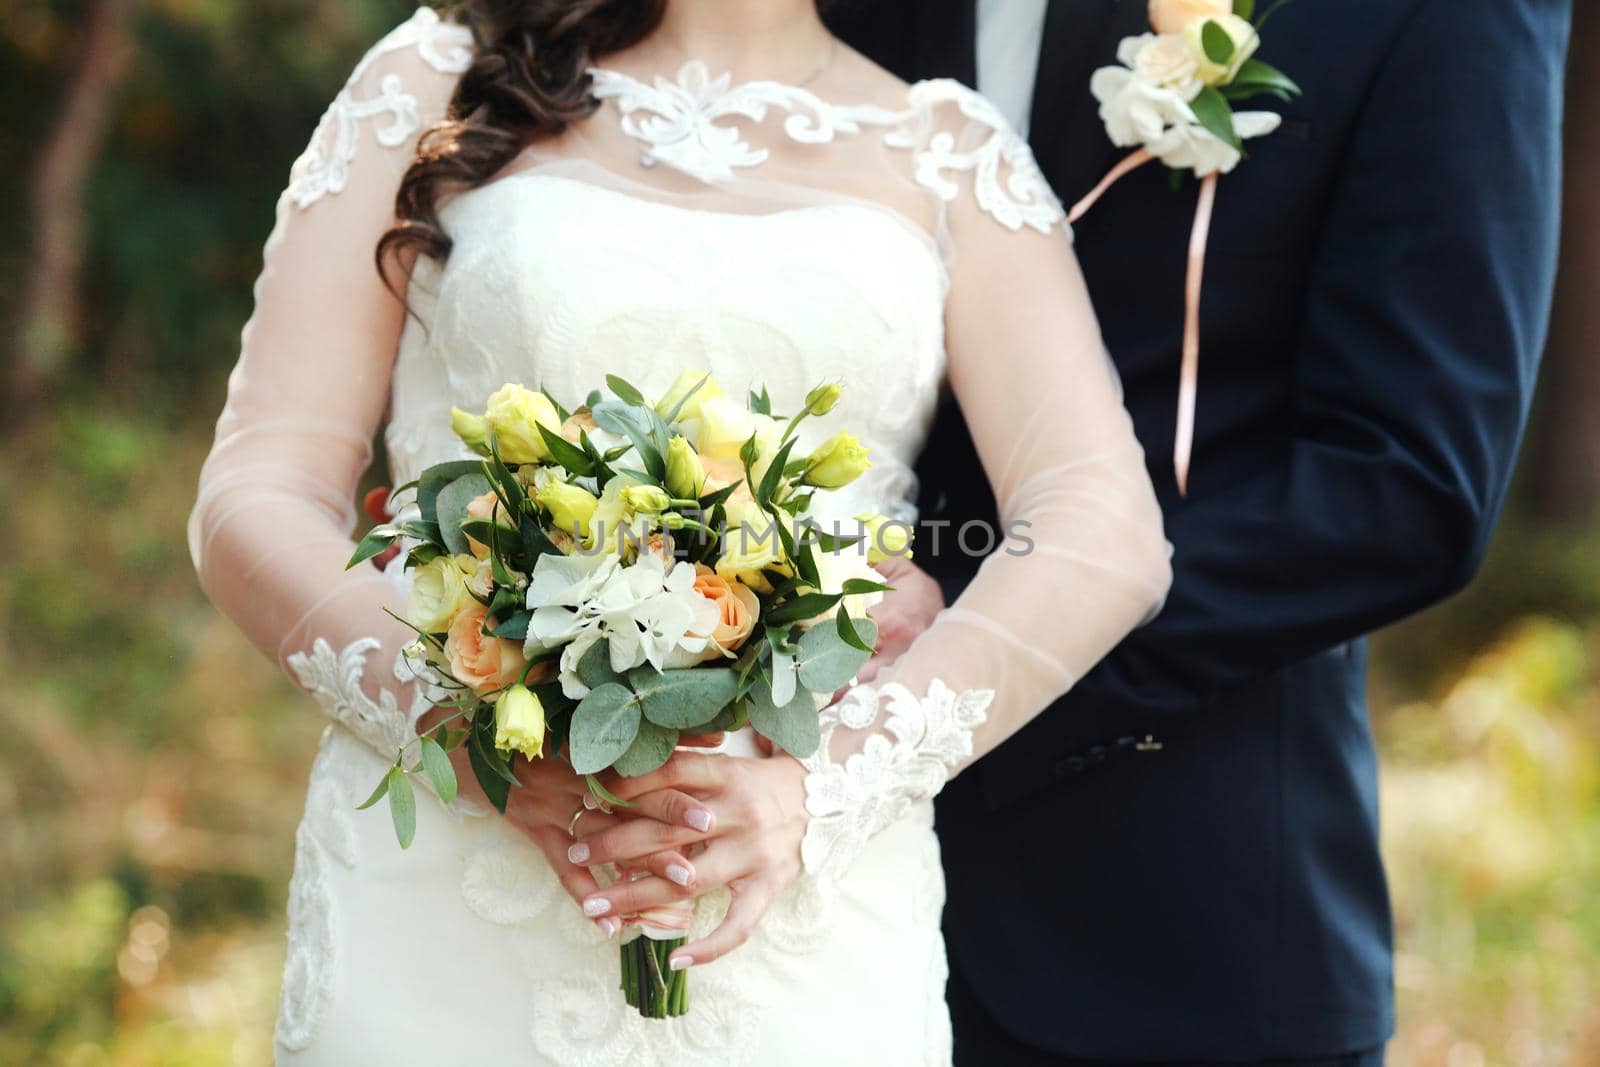 wedding bouquet in bride's hands by IvanGalashchuk